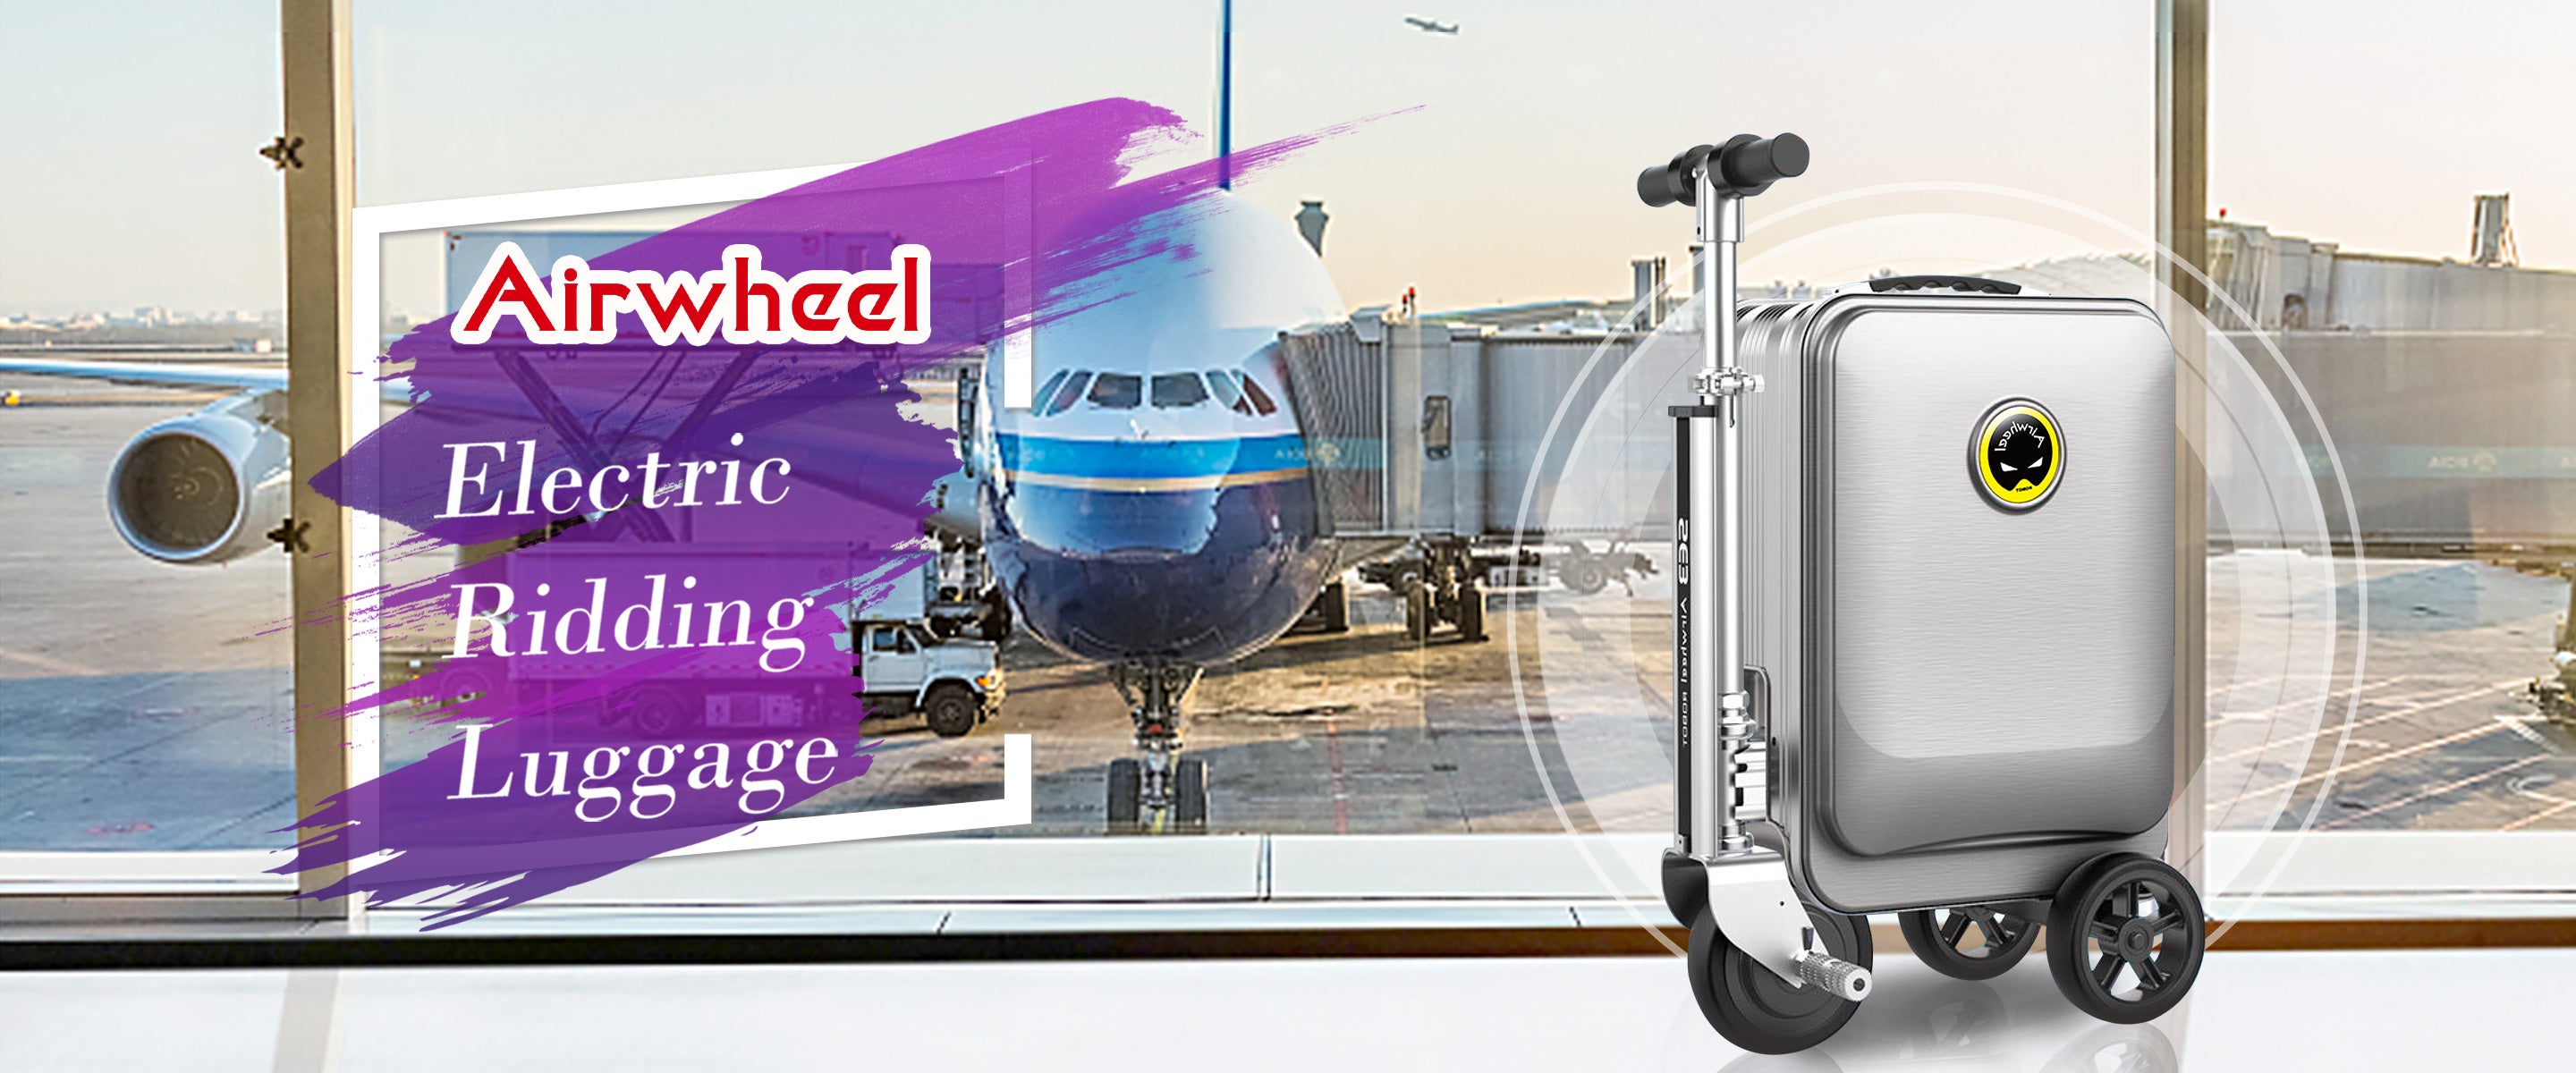 airwheel-luggage-banner-desktop.jpg